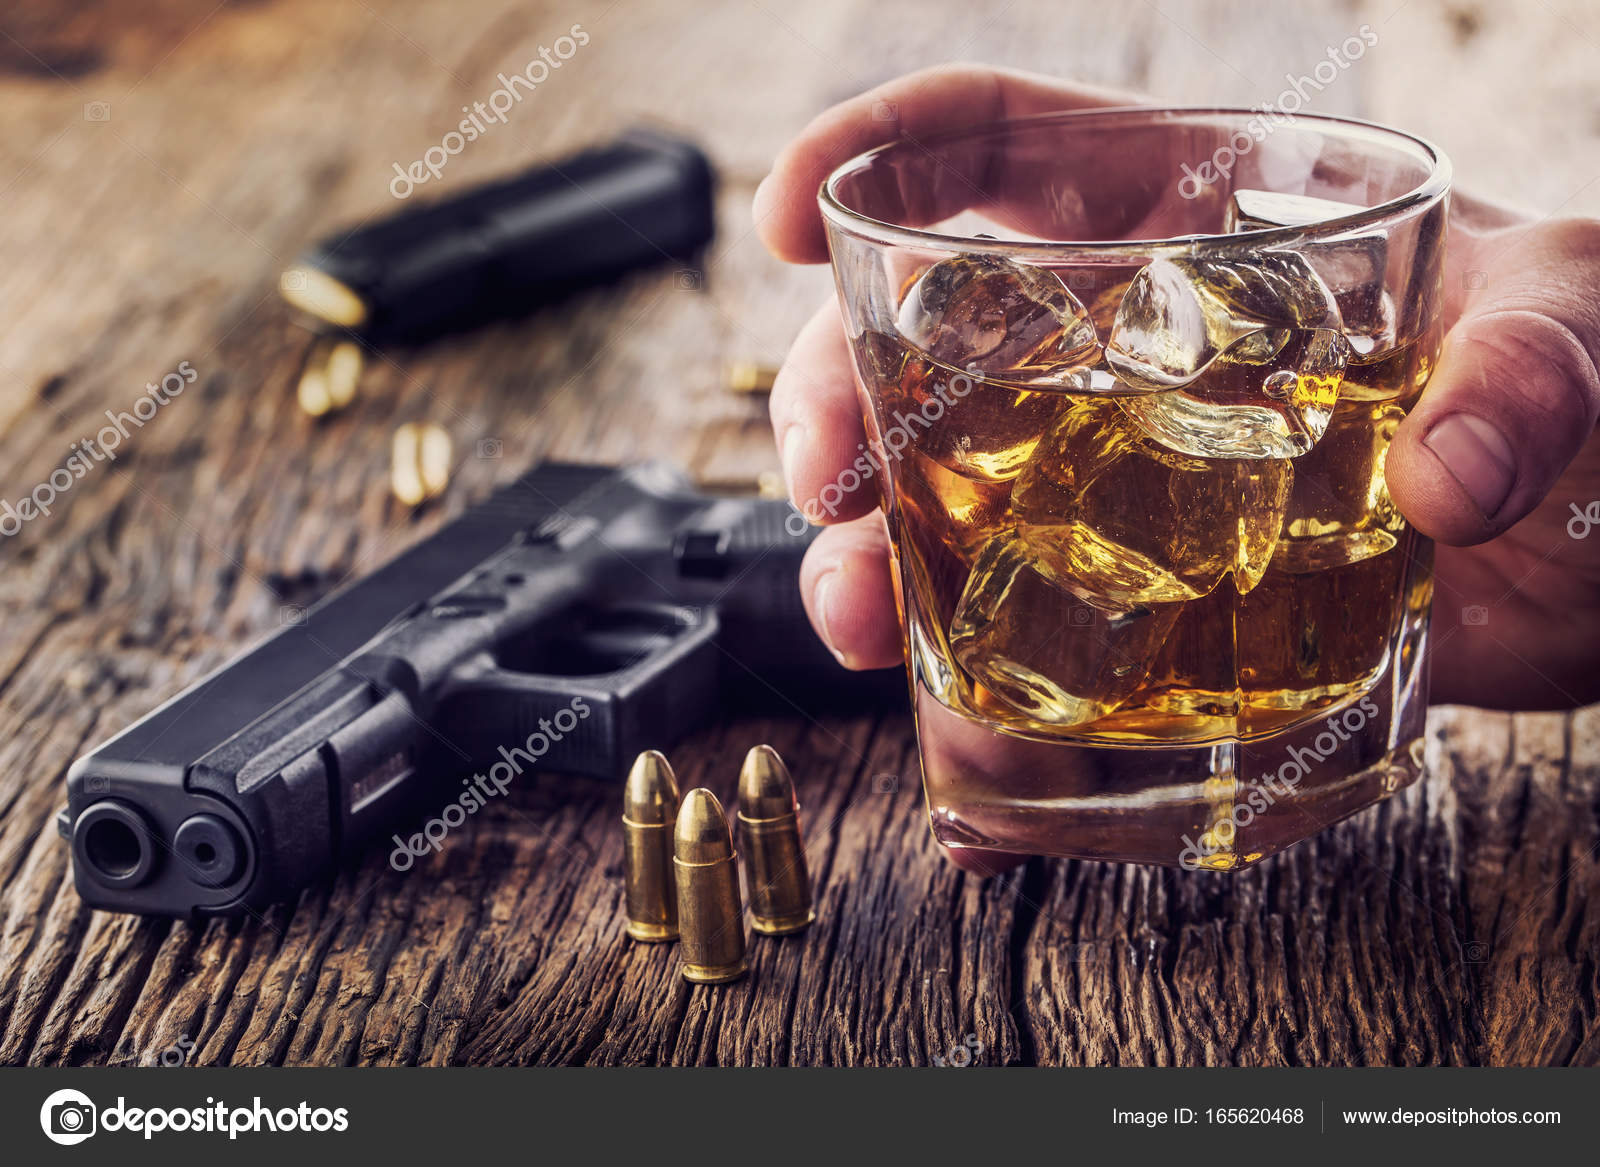 Gun och alkohol. 9mm pistol pistol och kopp whiskey konjak eller brandy —  Stockfotografi © weyo #165620460